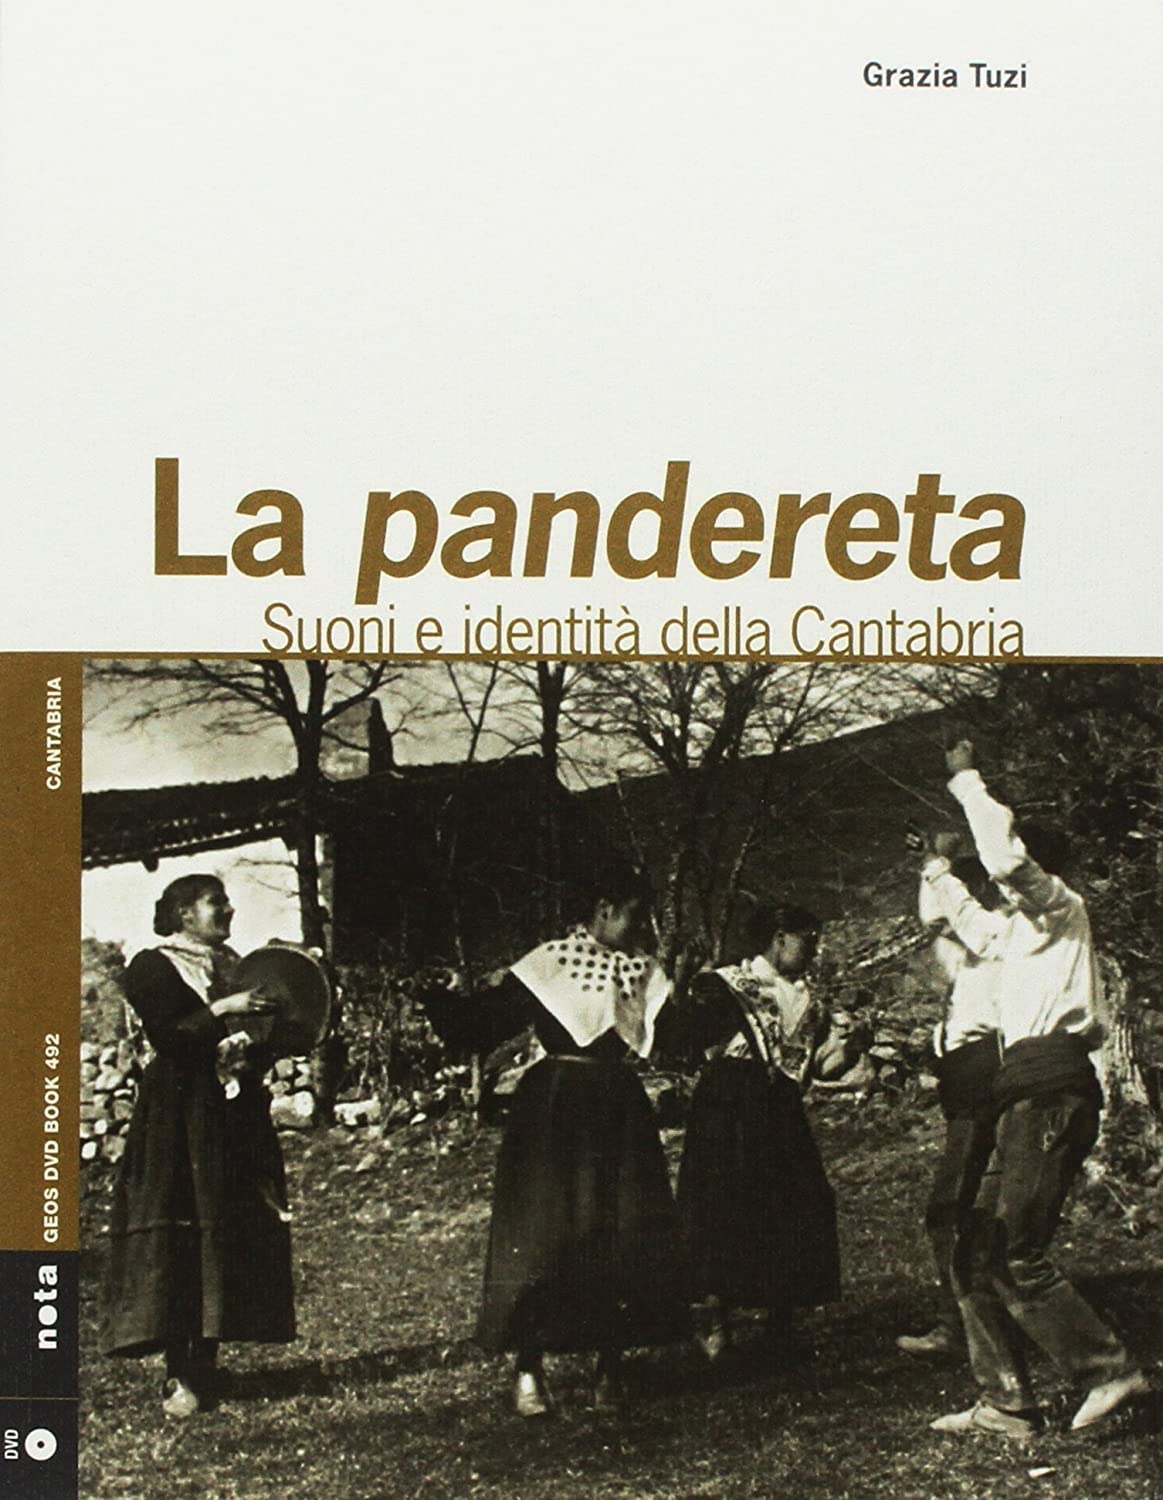 Libri Grazia Tuzi - Pandereta. Suoni E Identita Del Cantabria. Con Libro NUOVO SIGILLATO, EDIZIONE DEL 19/03/2018 SUBITO DISPONIBILE